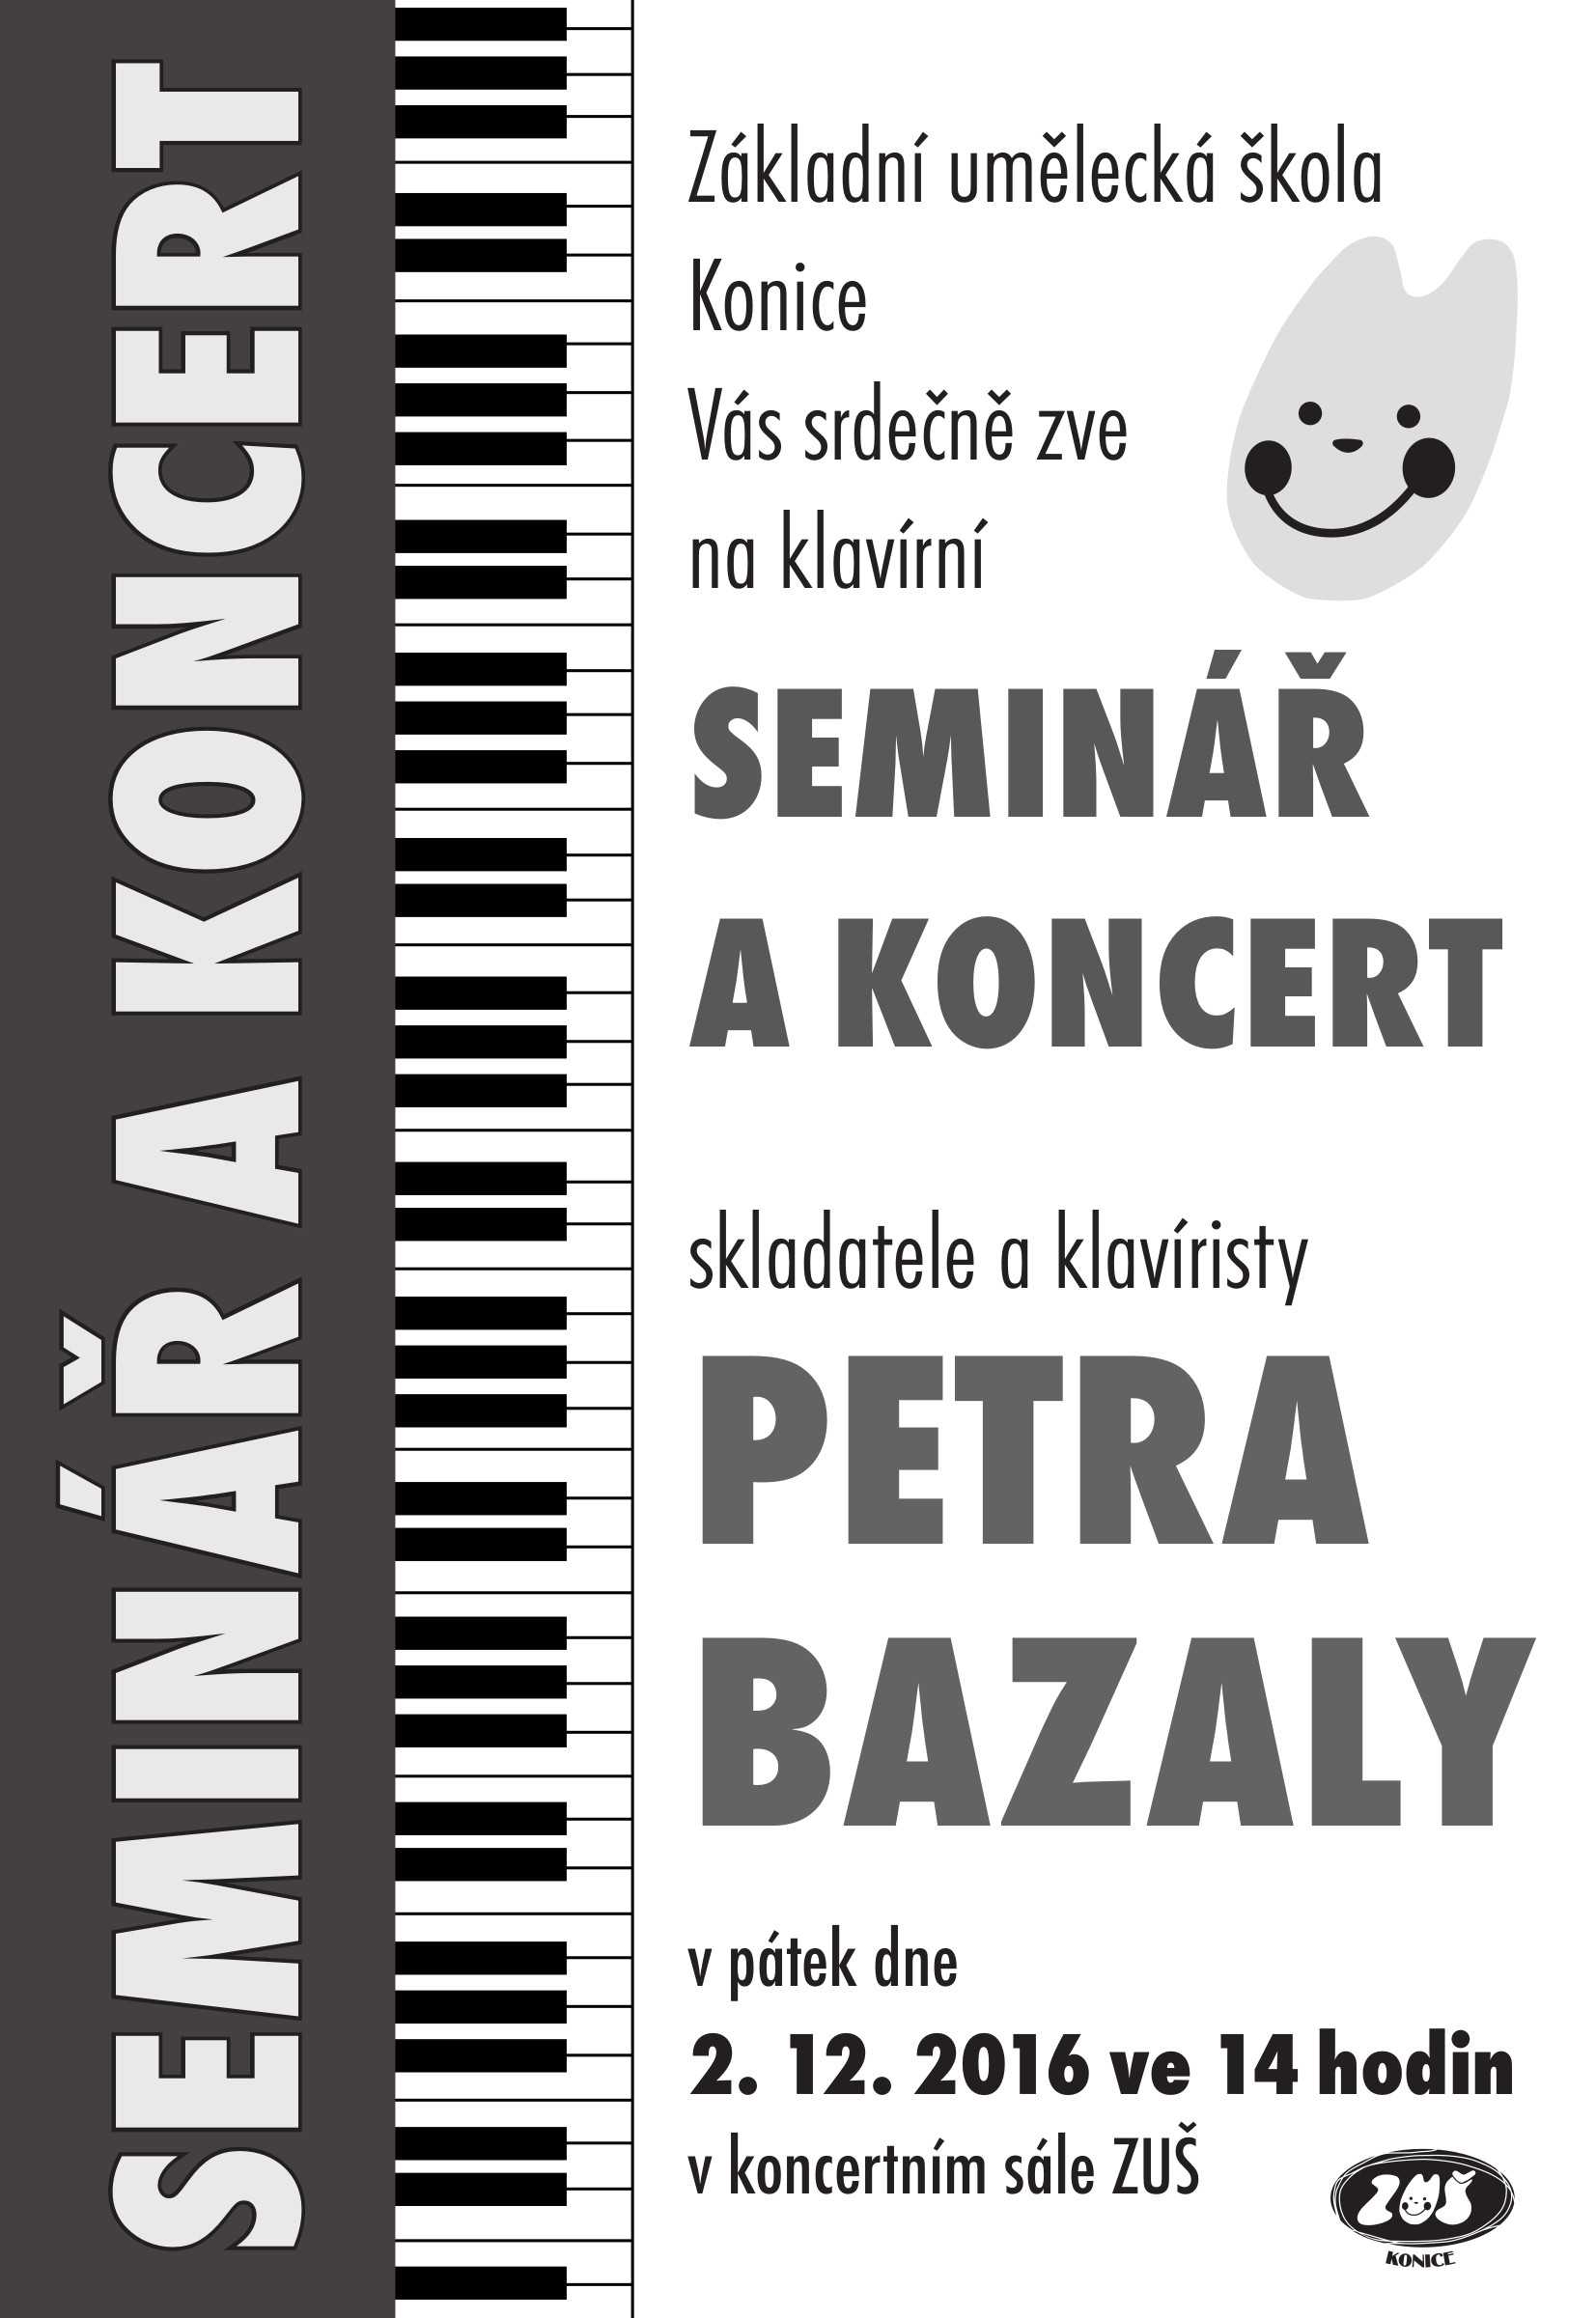 Bazala seminář a koncert 2 1